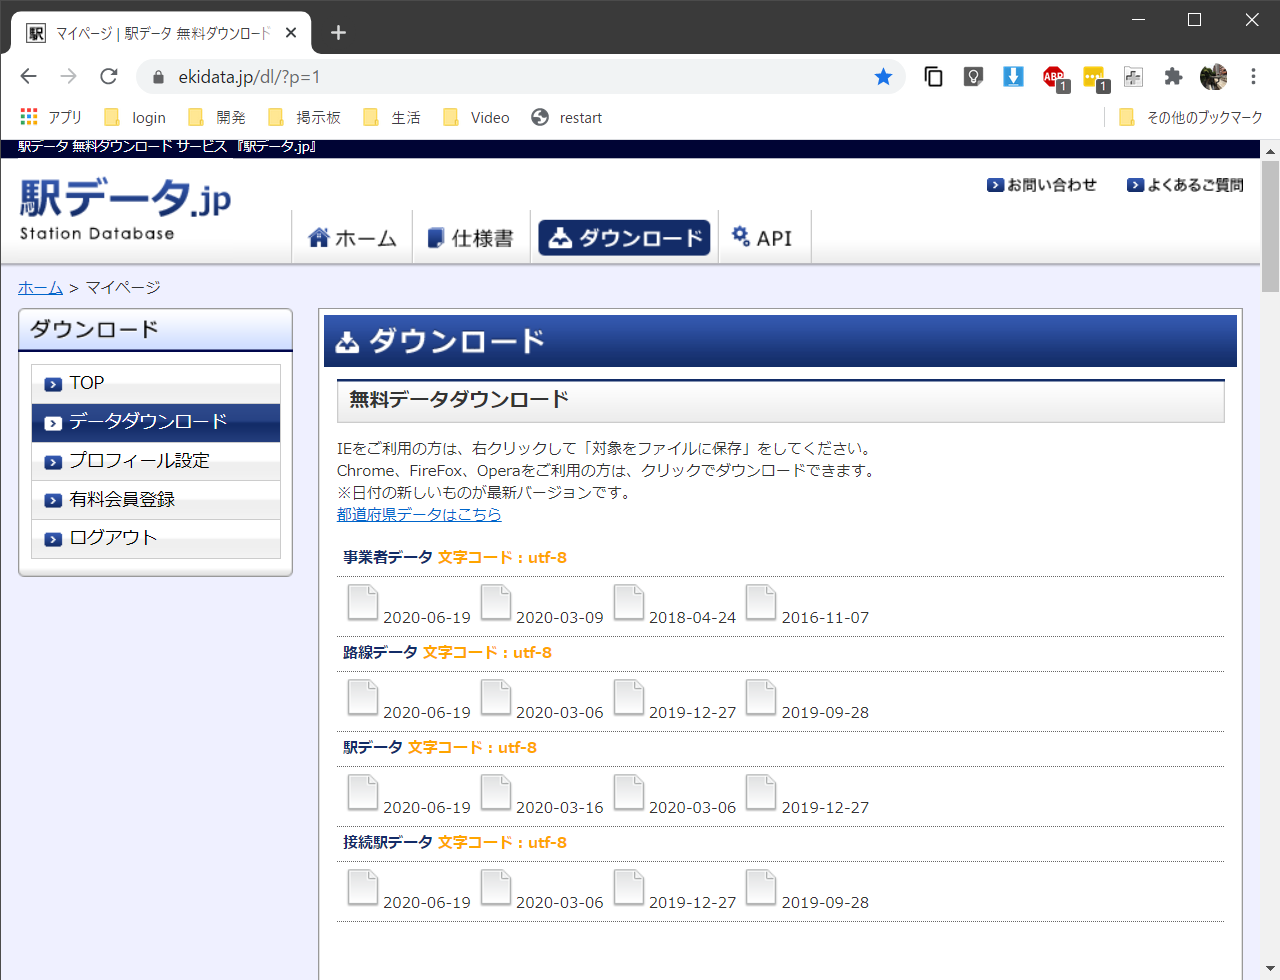 マイページ _ 駅データ 無料ダウンロード 『駅データ.jp』 - Google Chrome 2020_07_15 8_04_35.png